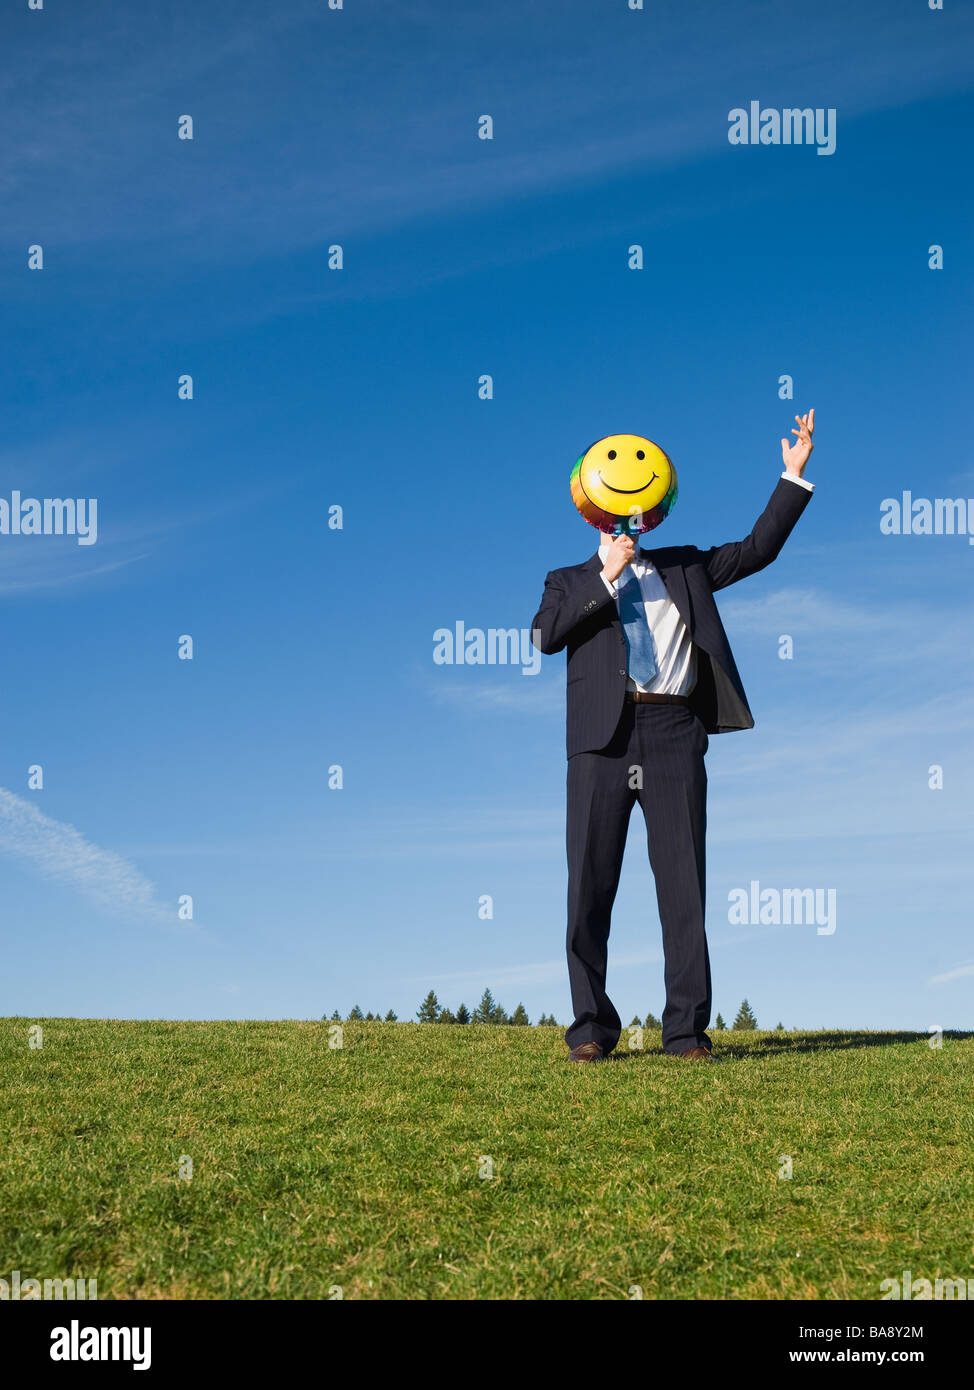 Businessman holding smiley face balloon over face Stock Photo